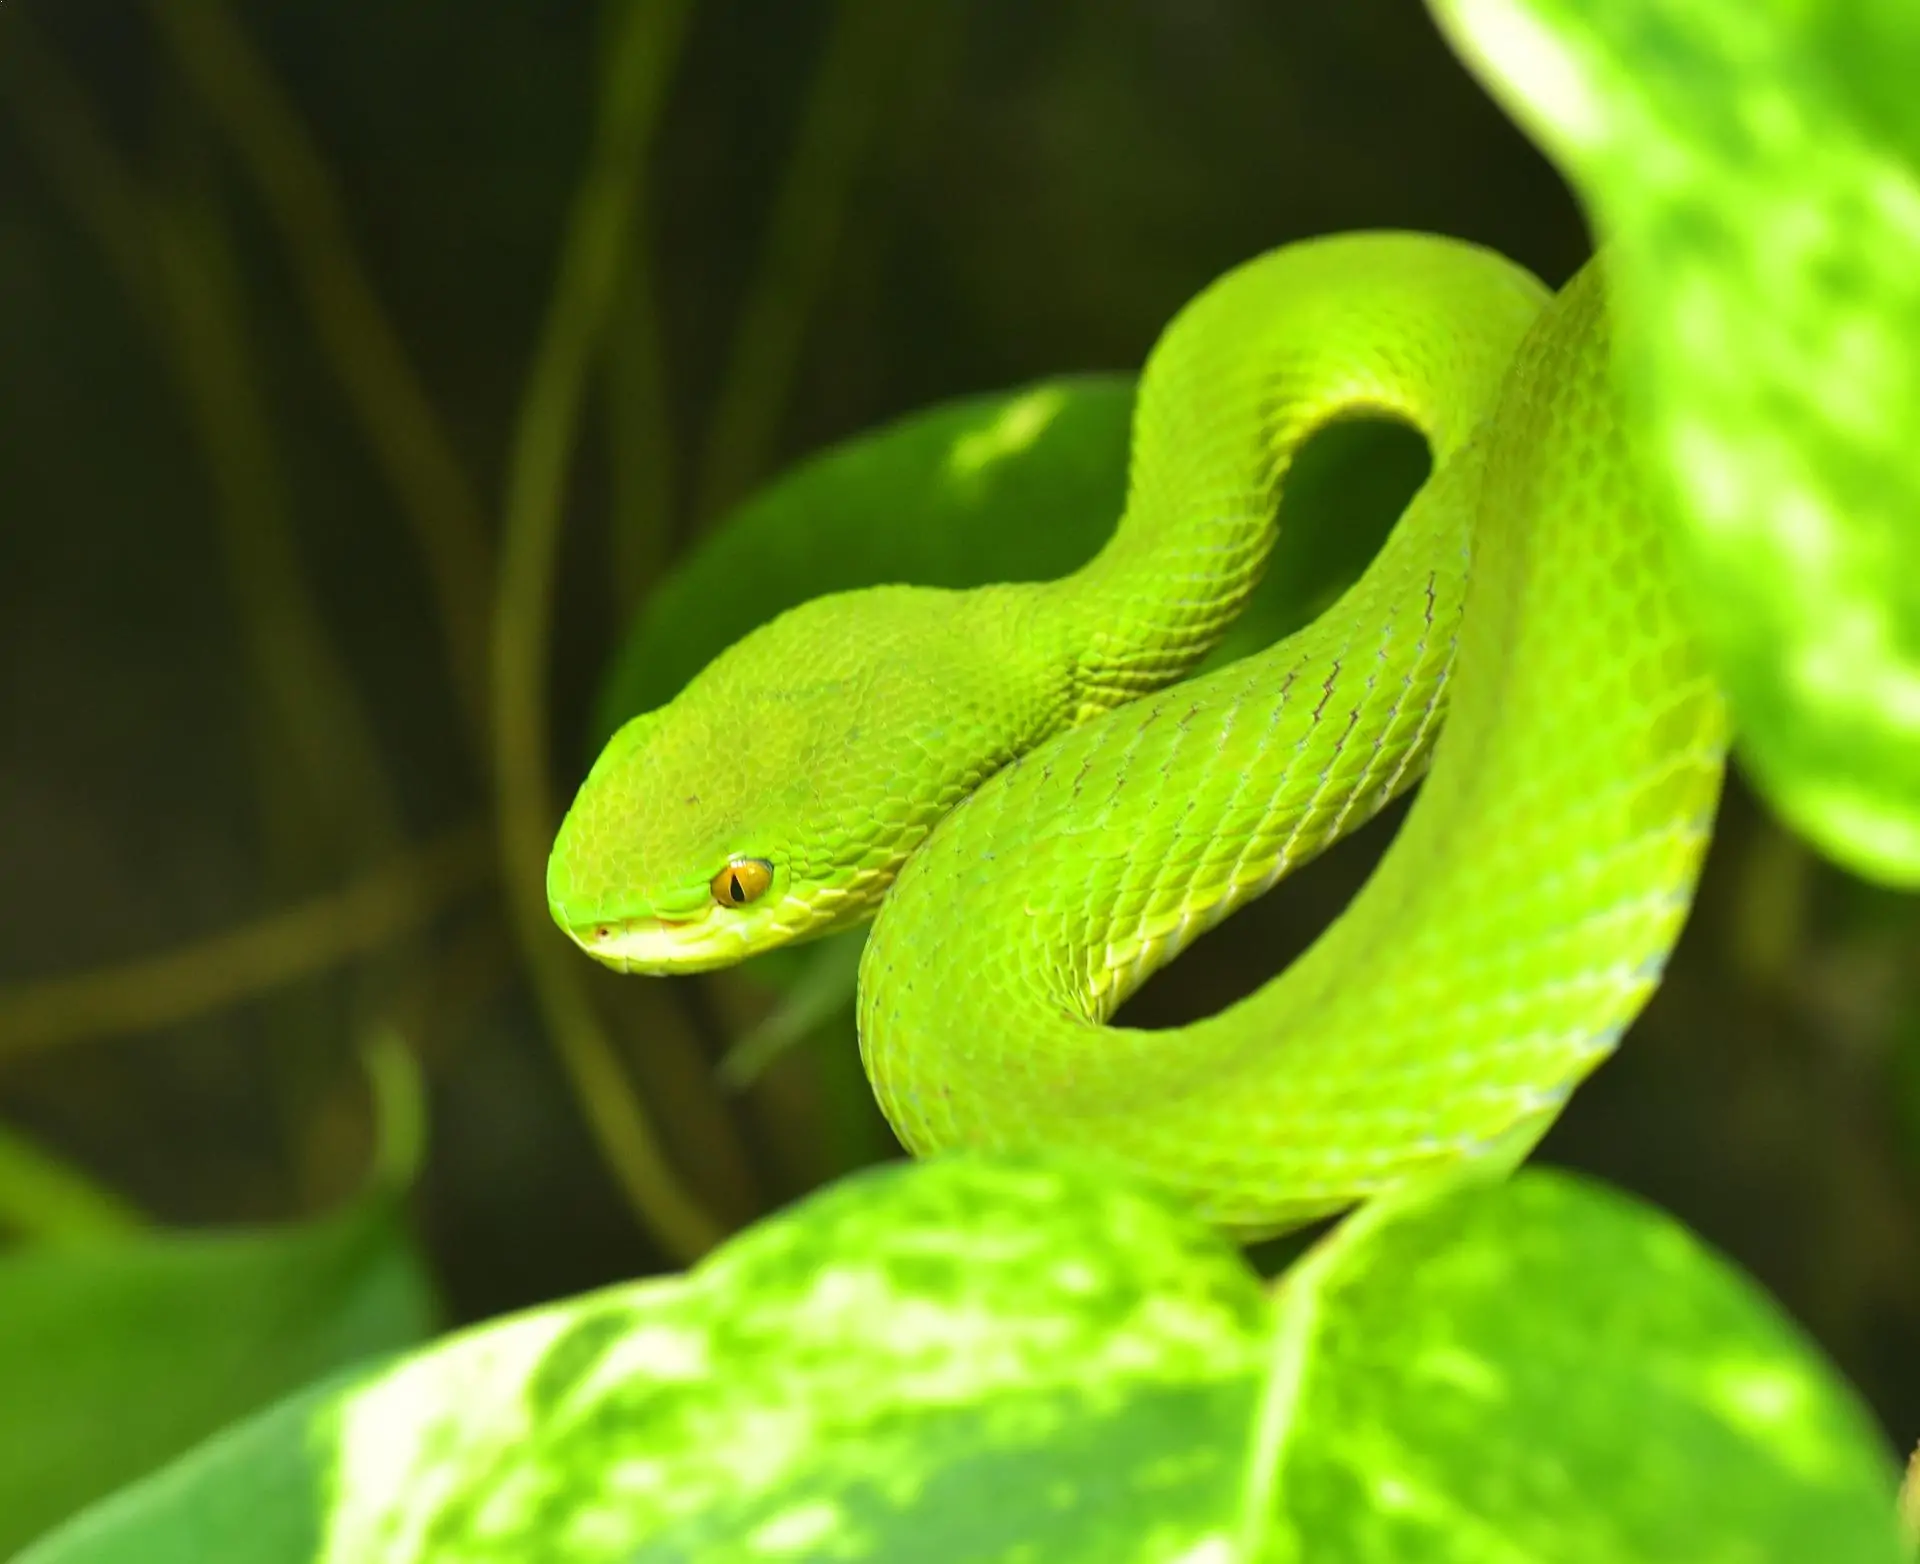 Non-Venomous Snakes In The World